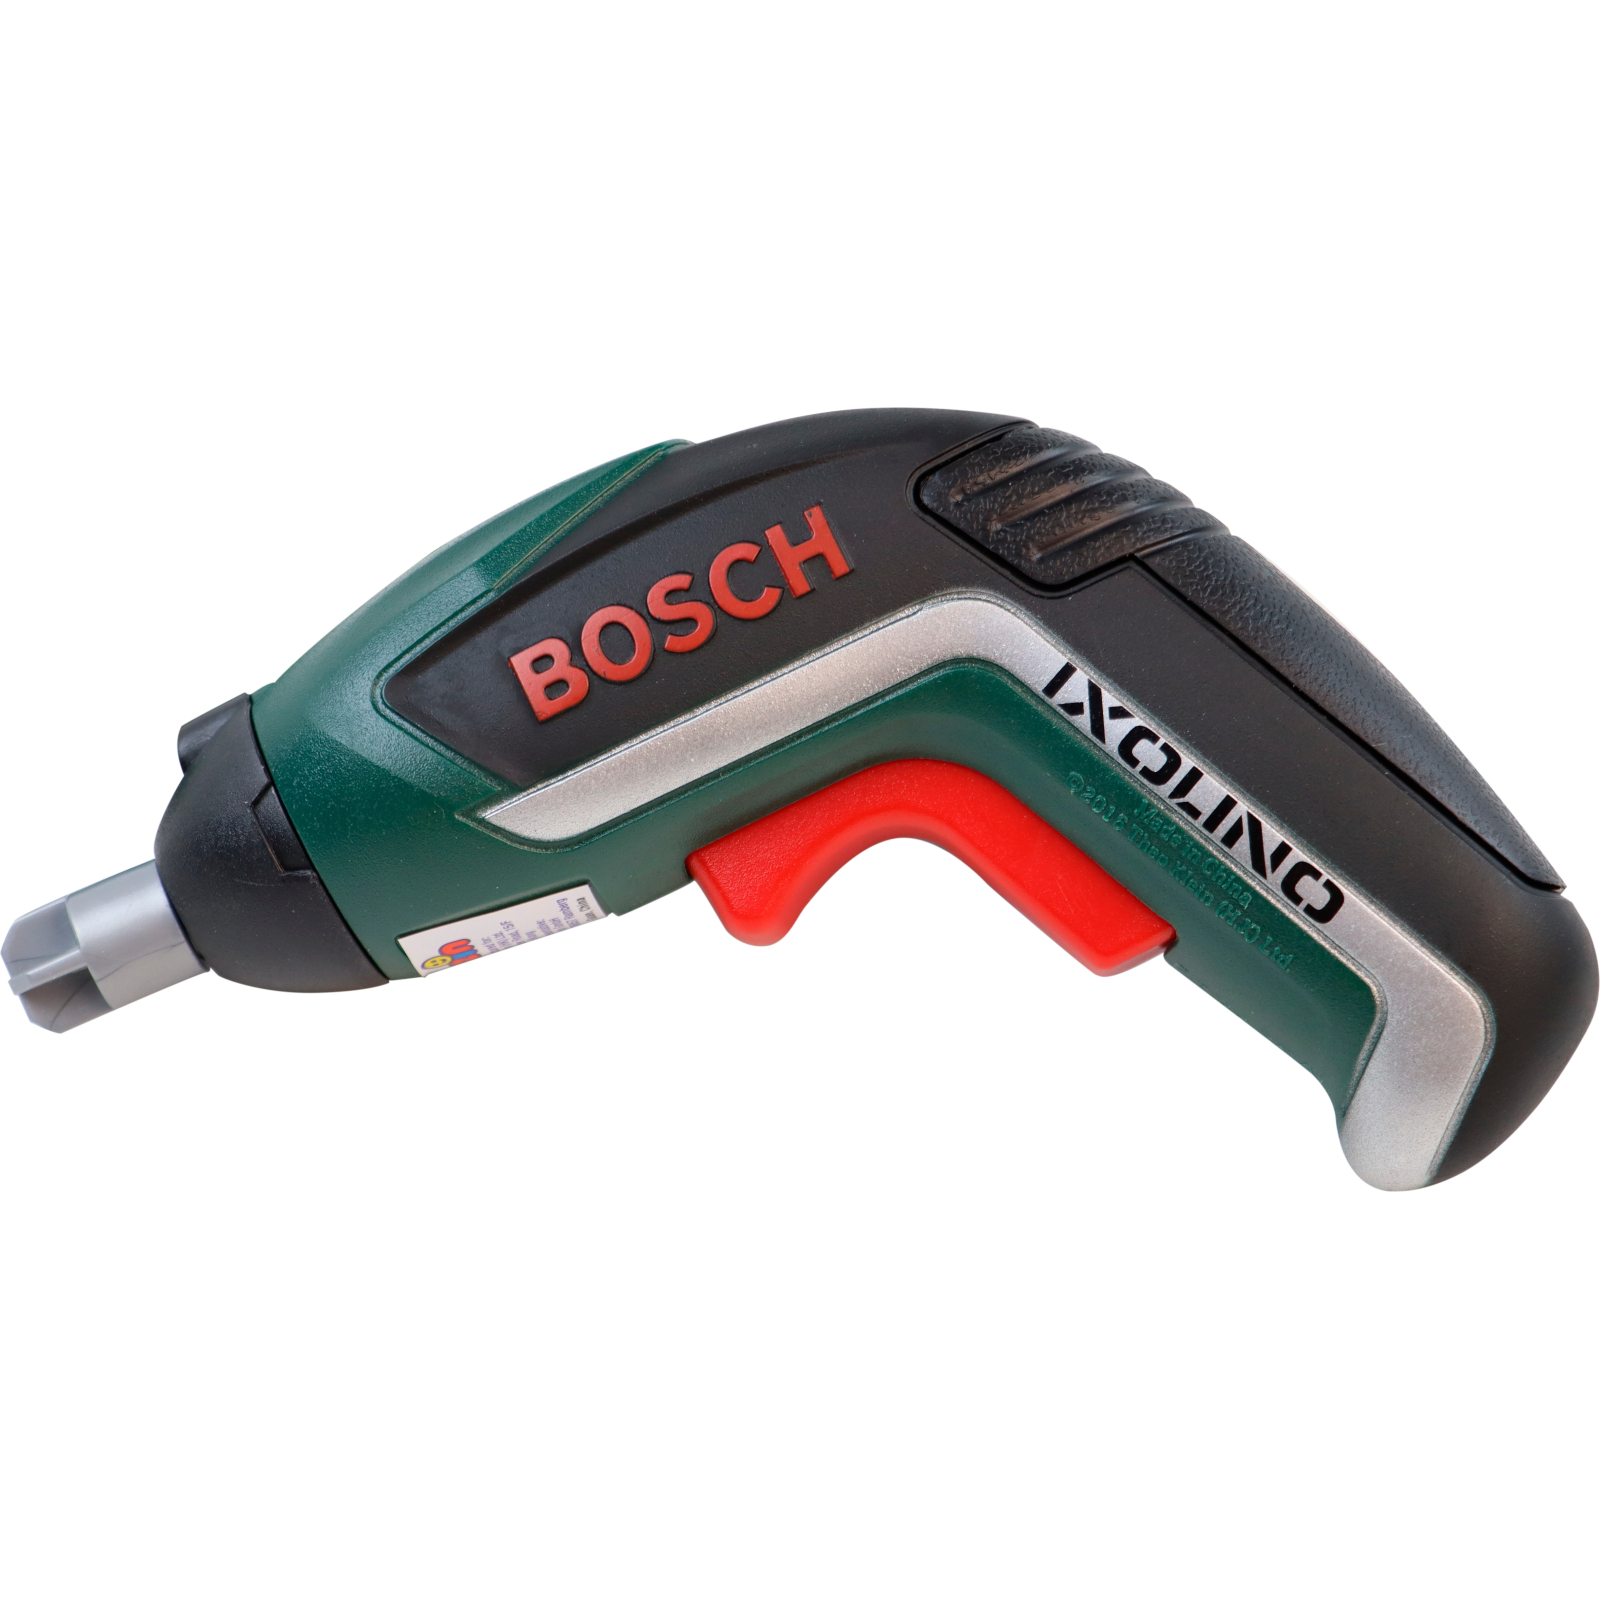 Игровой набор Bosch инструментов с шуруповертом Ixo (8510) изображение 2